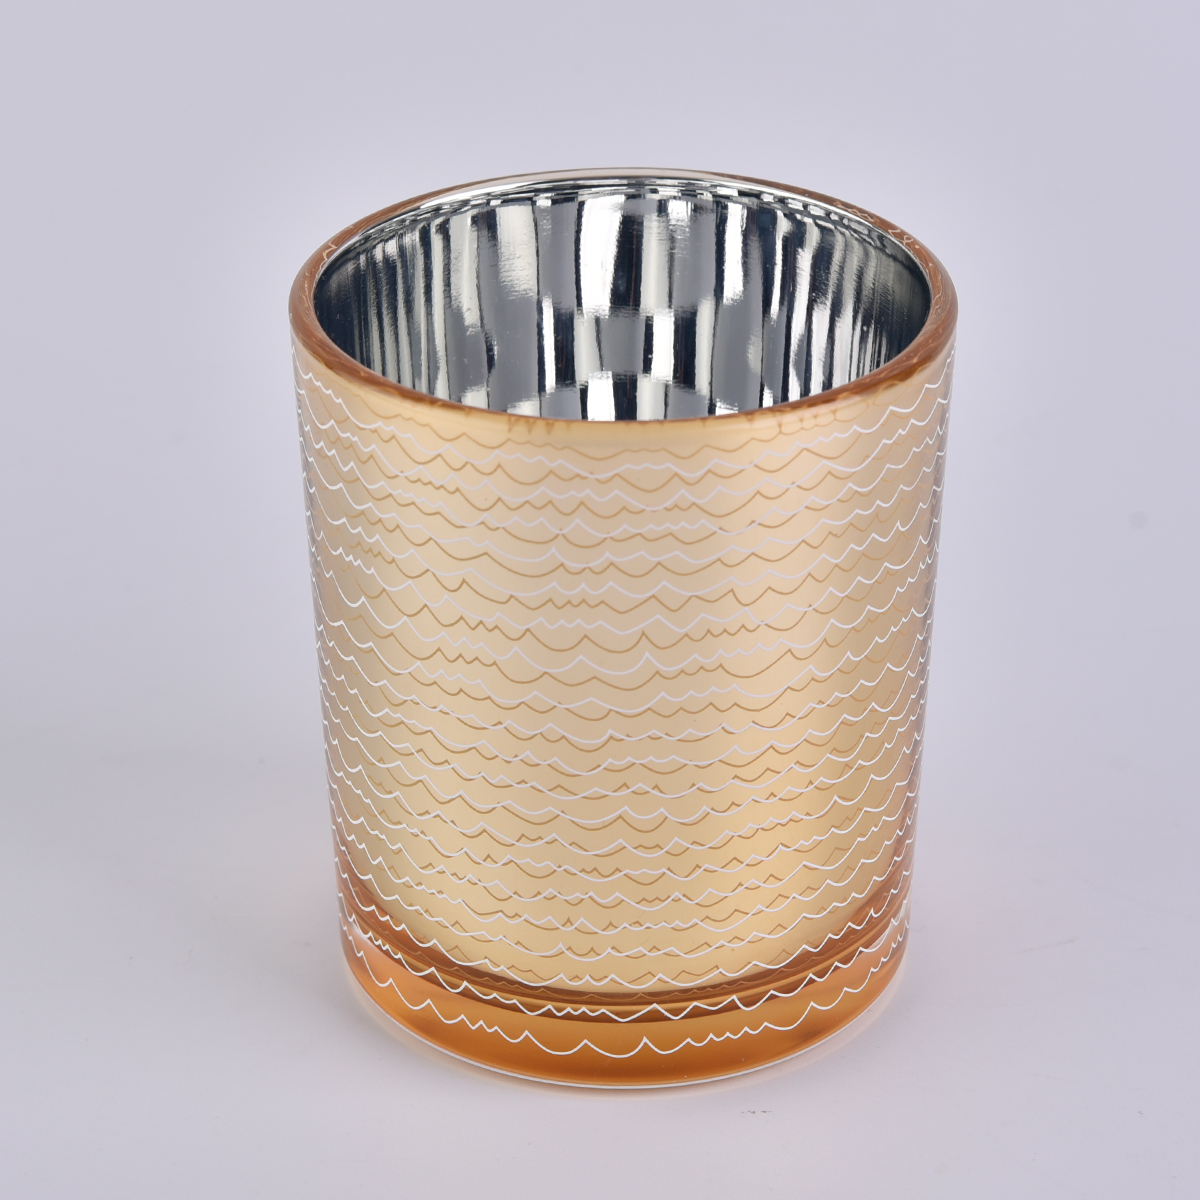 Jar lilin kaca dekoratif dengan sliver elektroplating di dalam